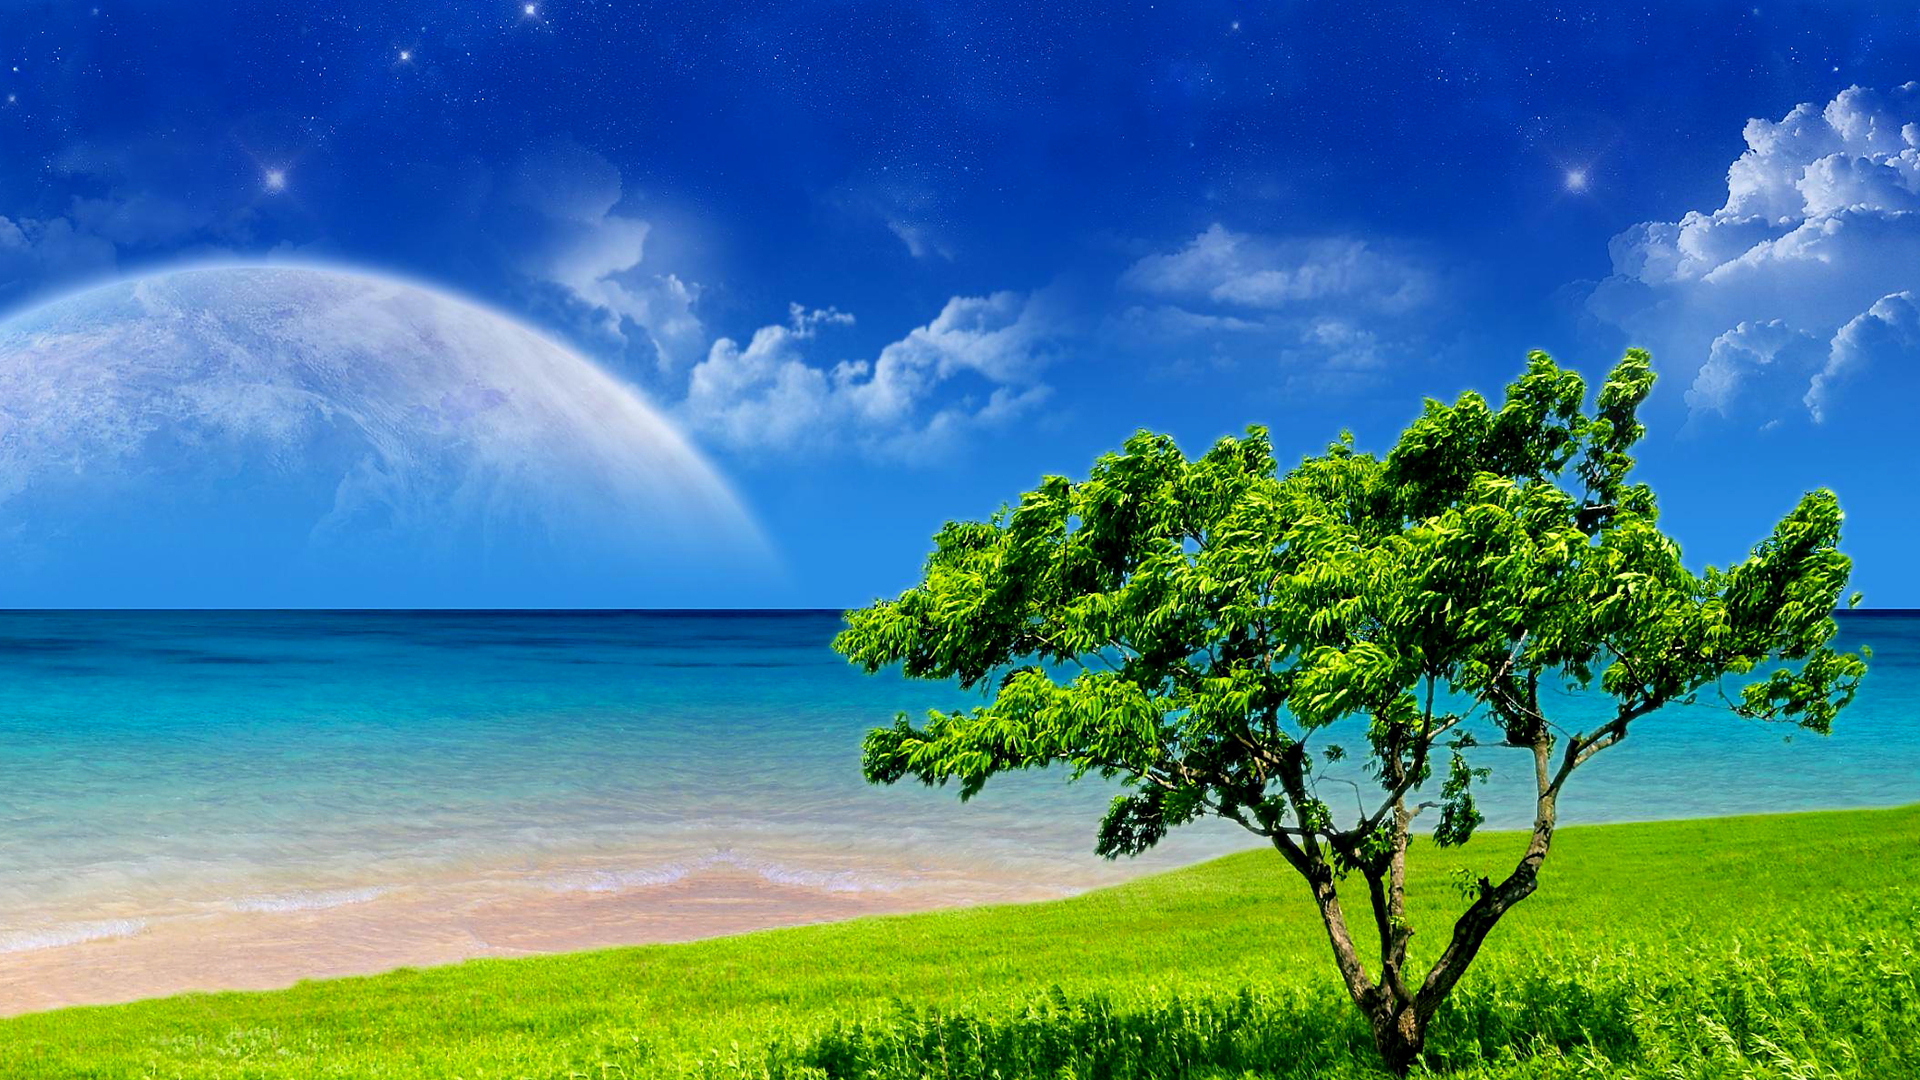 Free download wallpaper Landscape, Fantasy, Sky, Sea, Tree, Field on your PC desktop